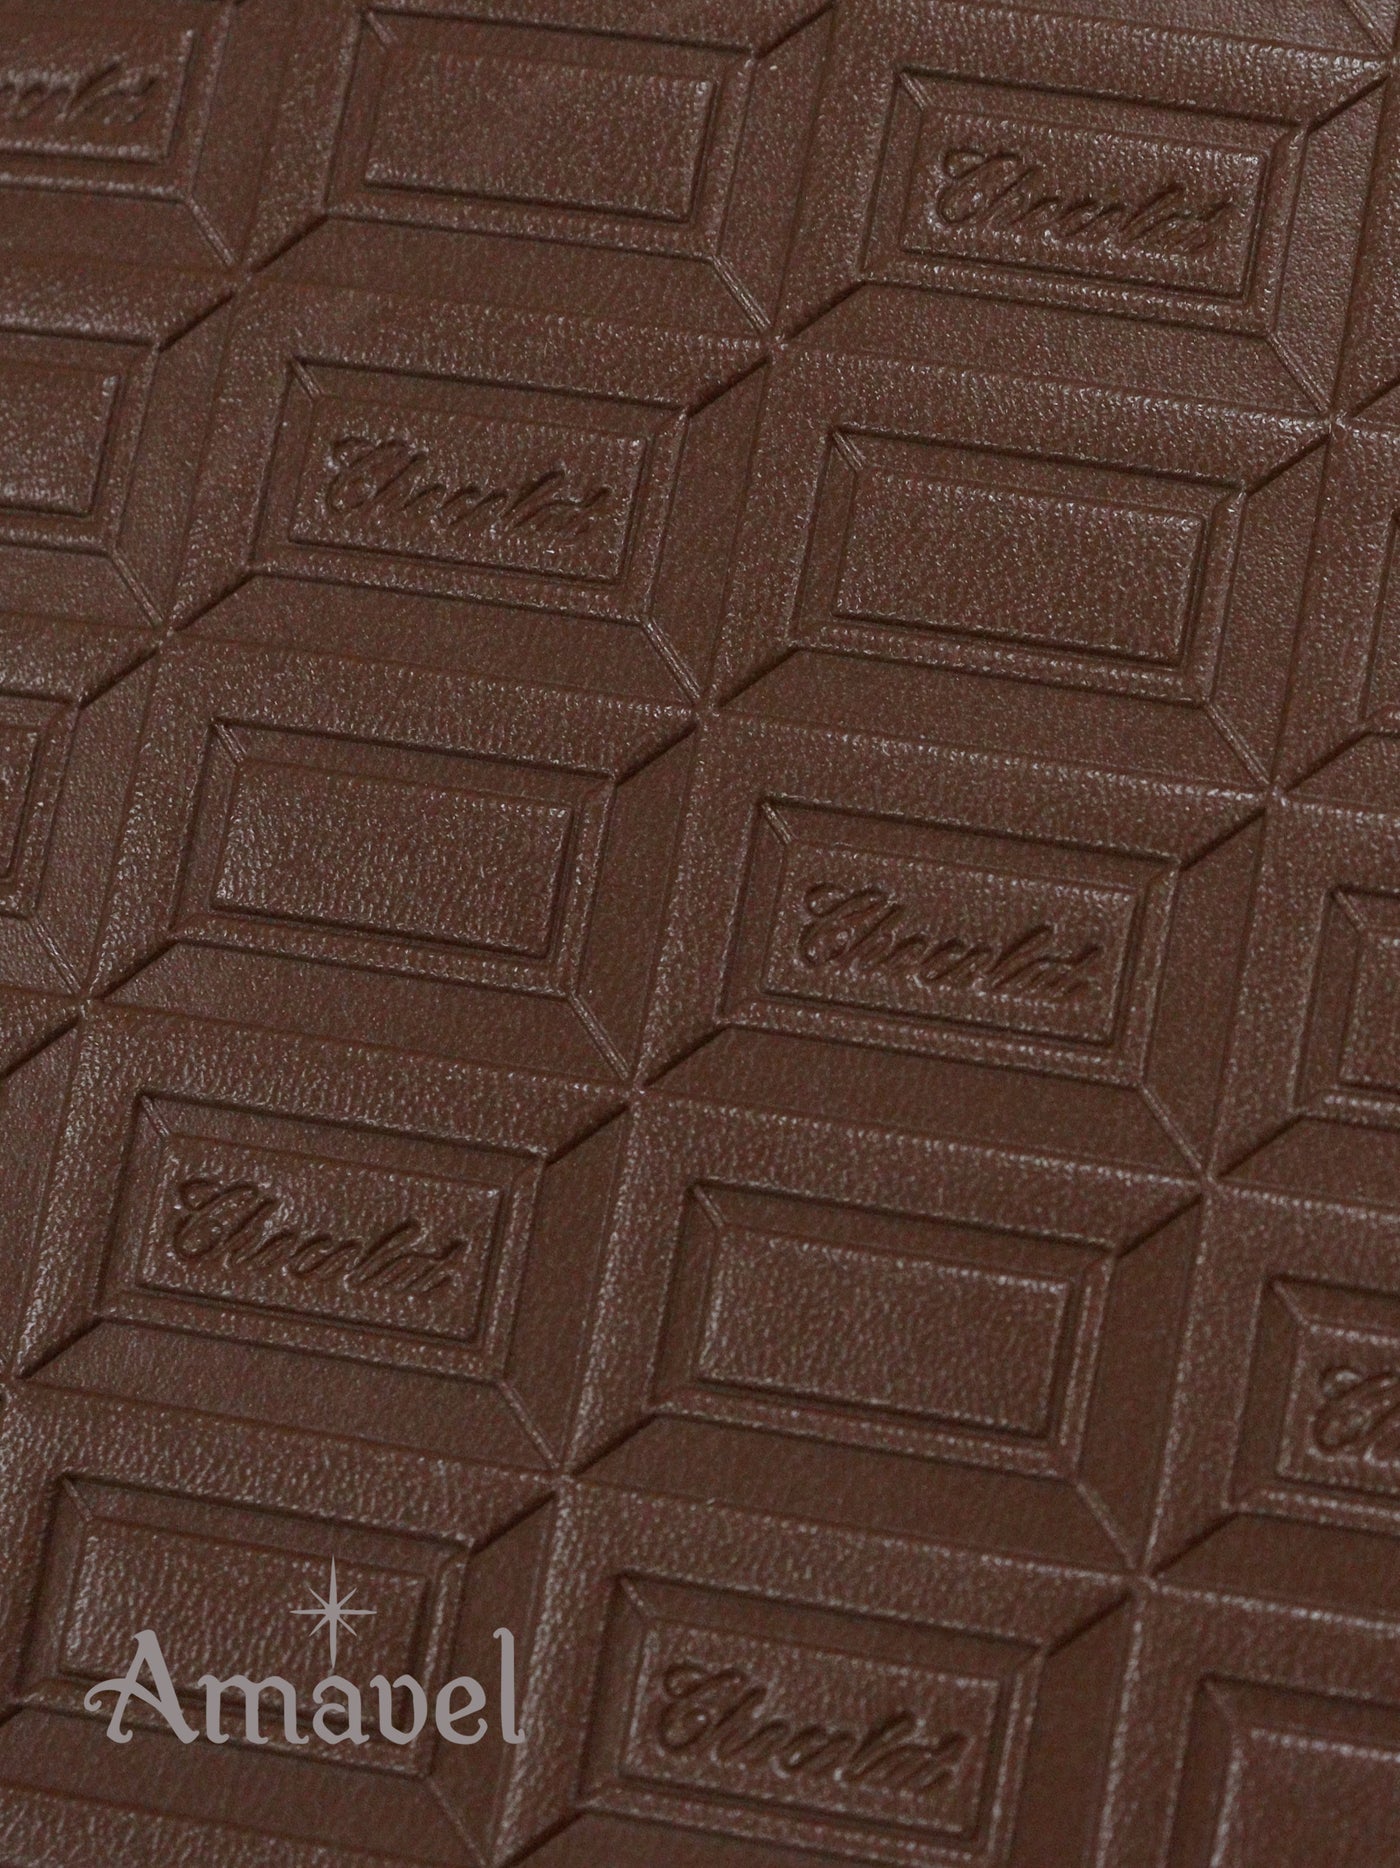 チョコレート型押し